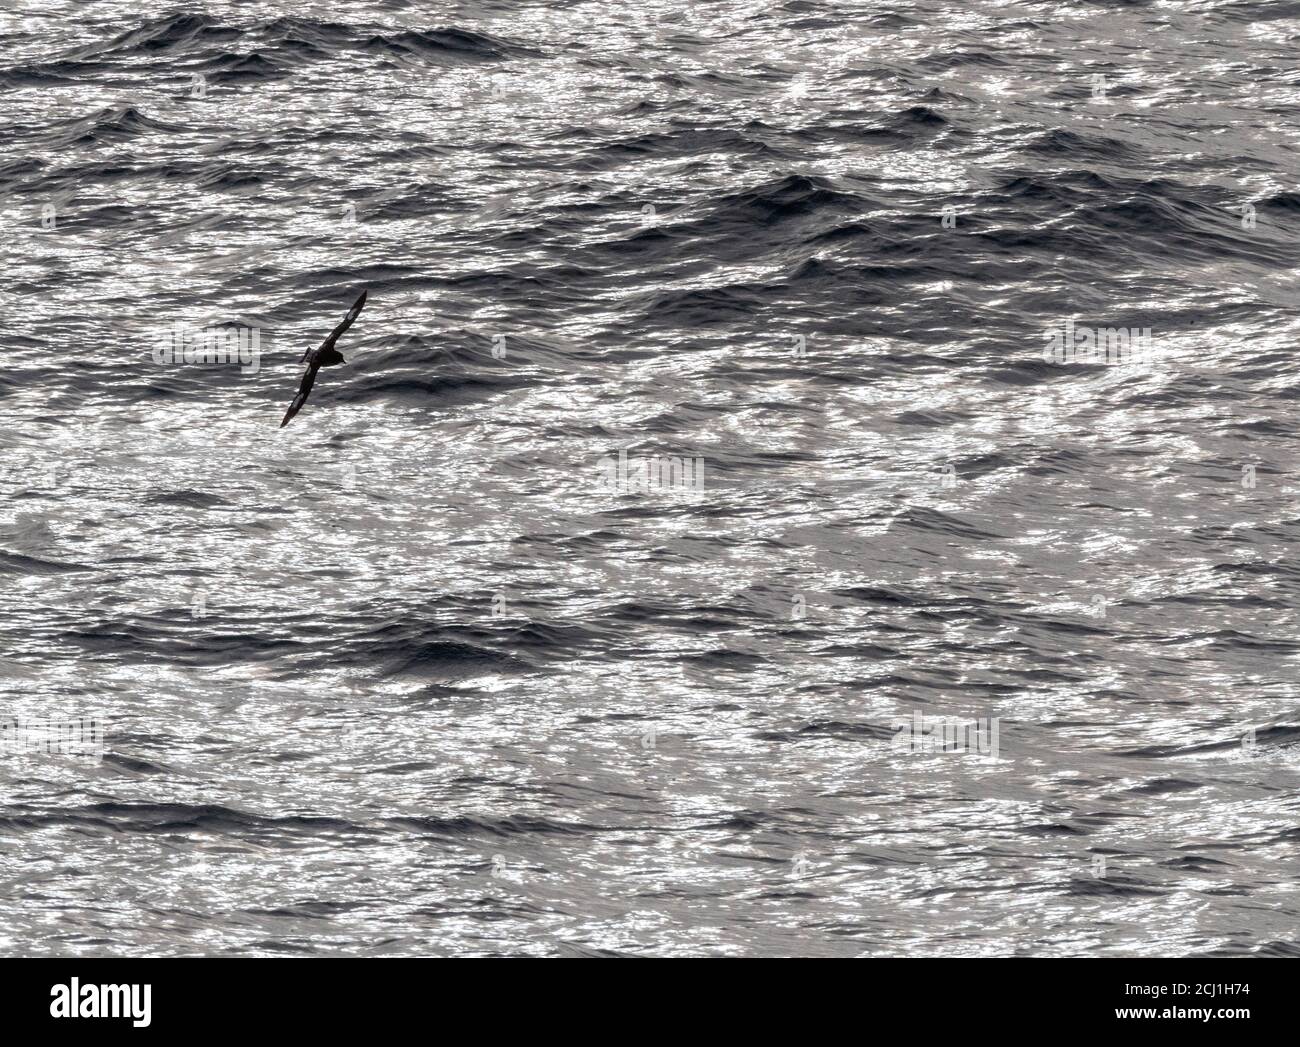 Pintado-Sturmvogel, antarktischer Kapsturmvogel, Kapsturmvogel (Daption capense australe, Daption australe), fliegen über die glitzernde Meeresoberfläche des Pazifiks Stockfoto